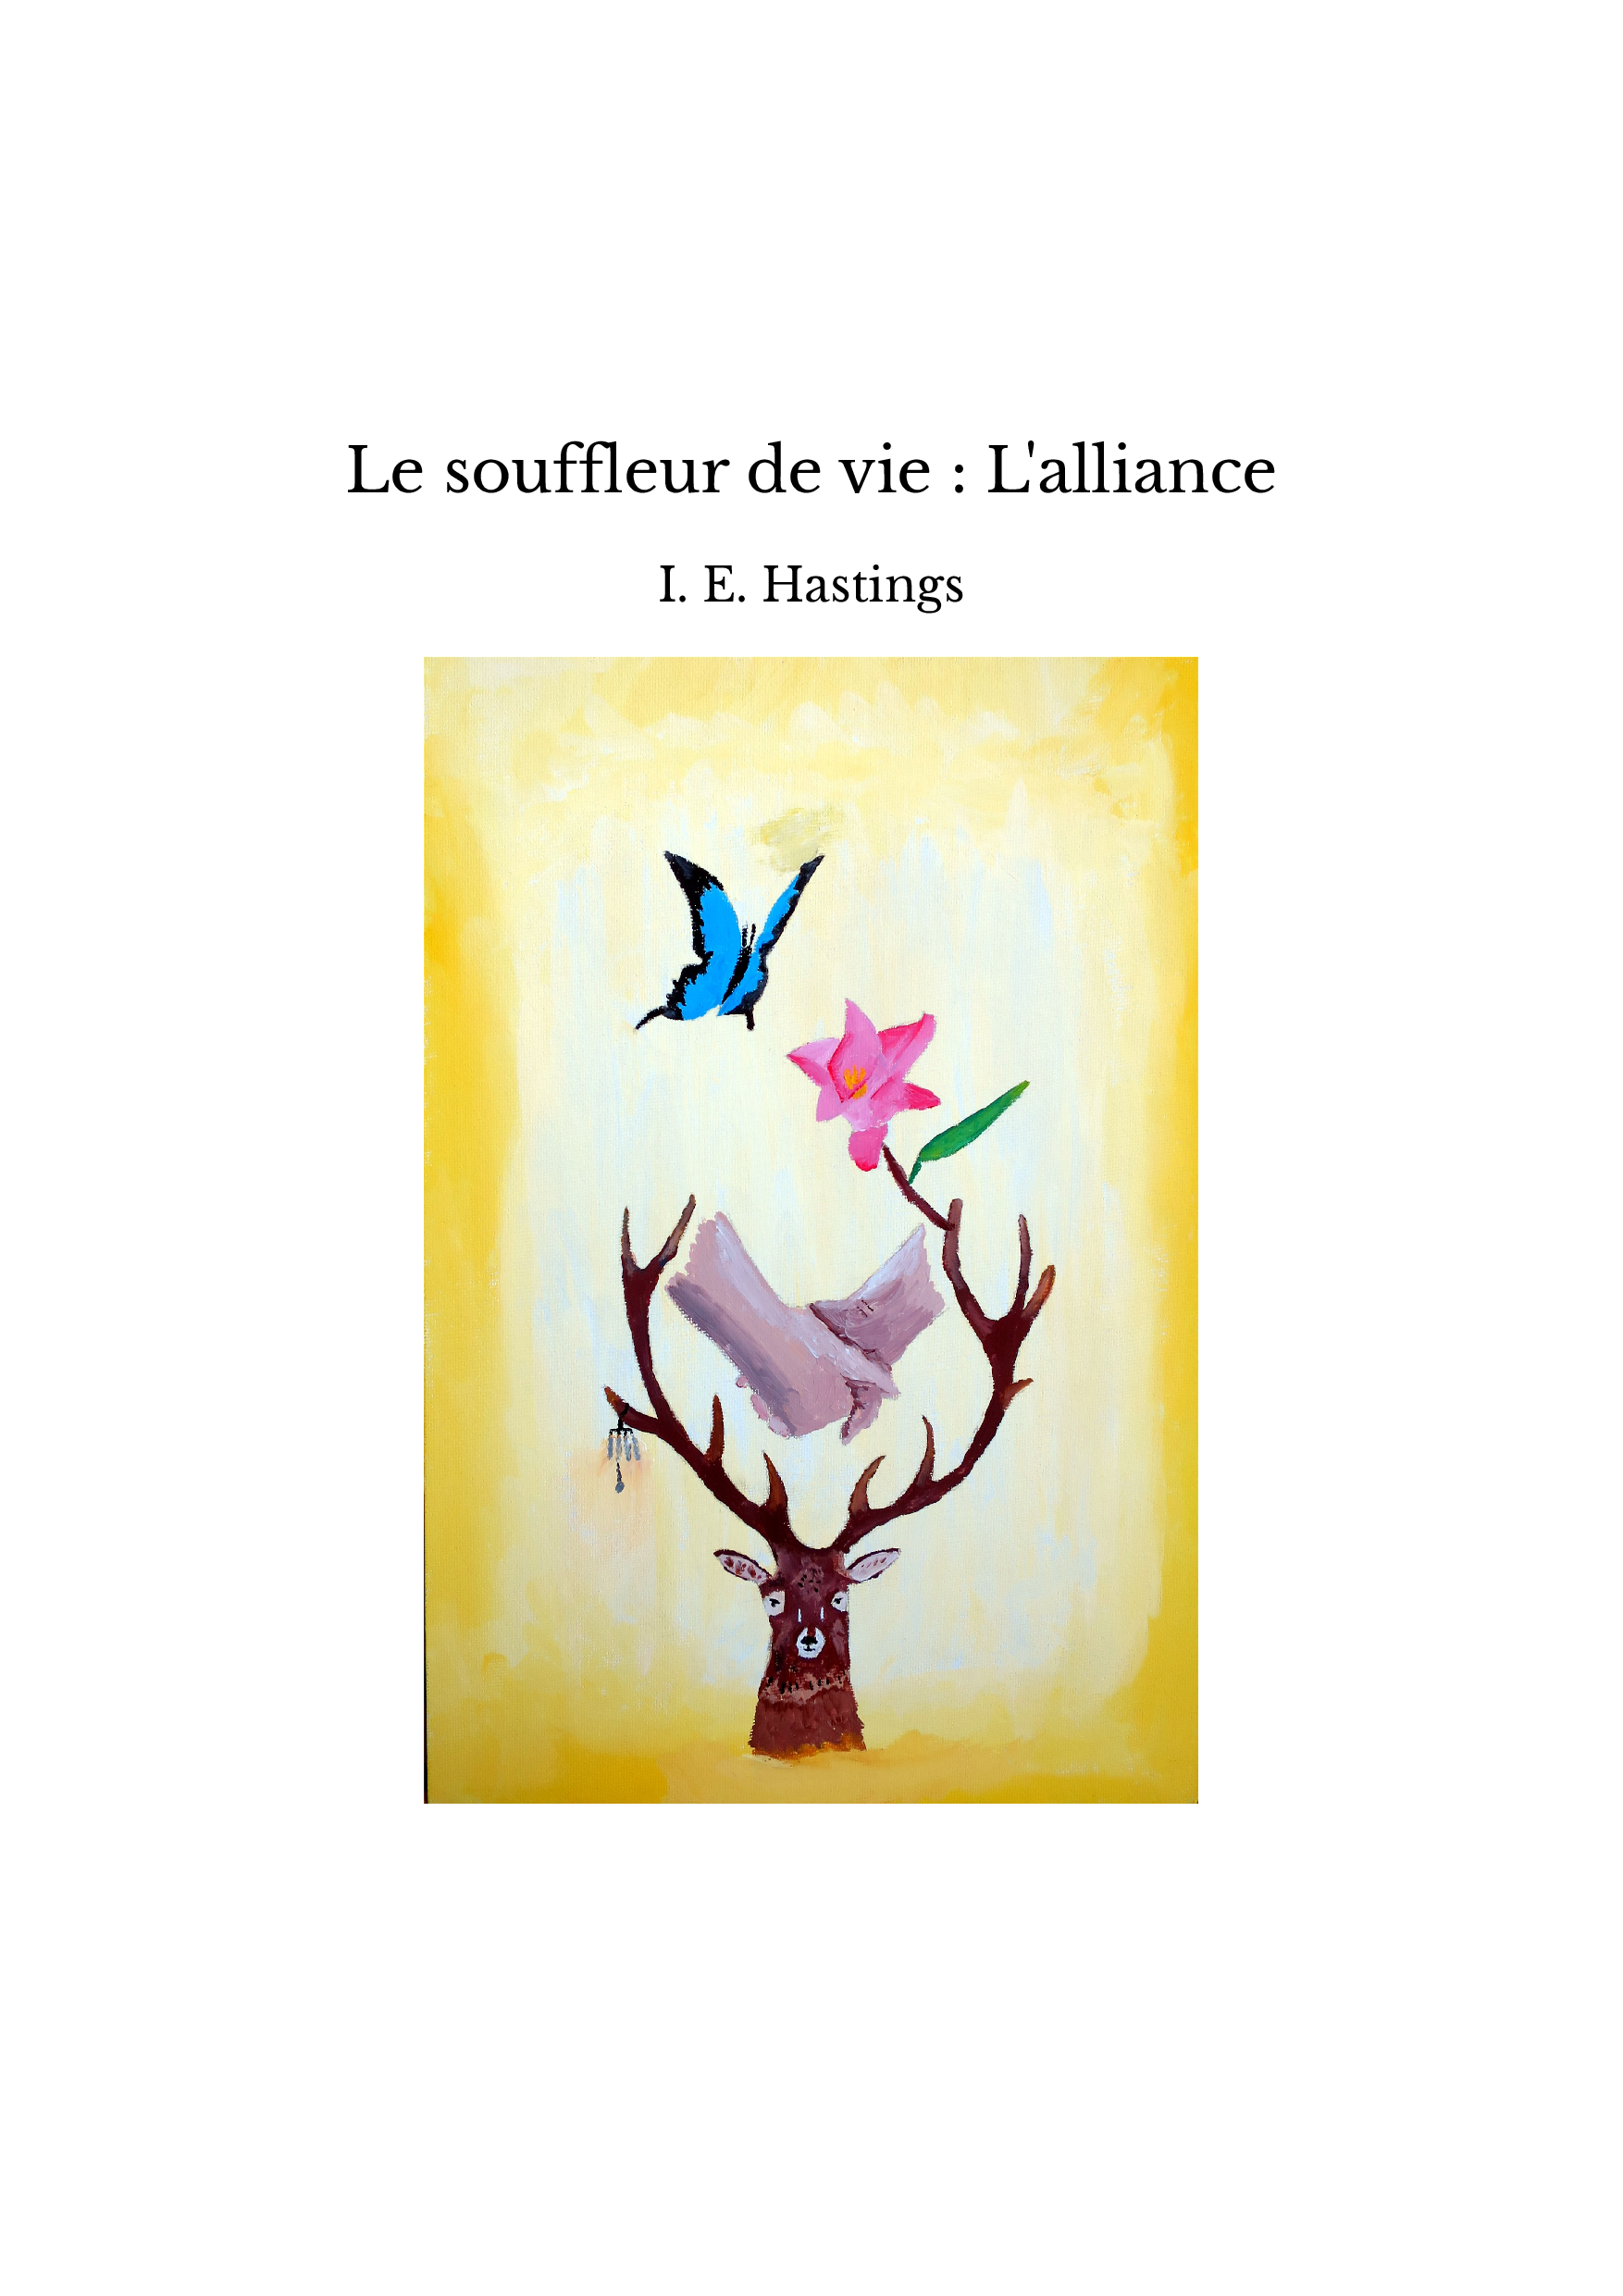 Le souffleur de vie : L'alliance - I. E. Hastings